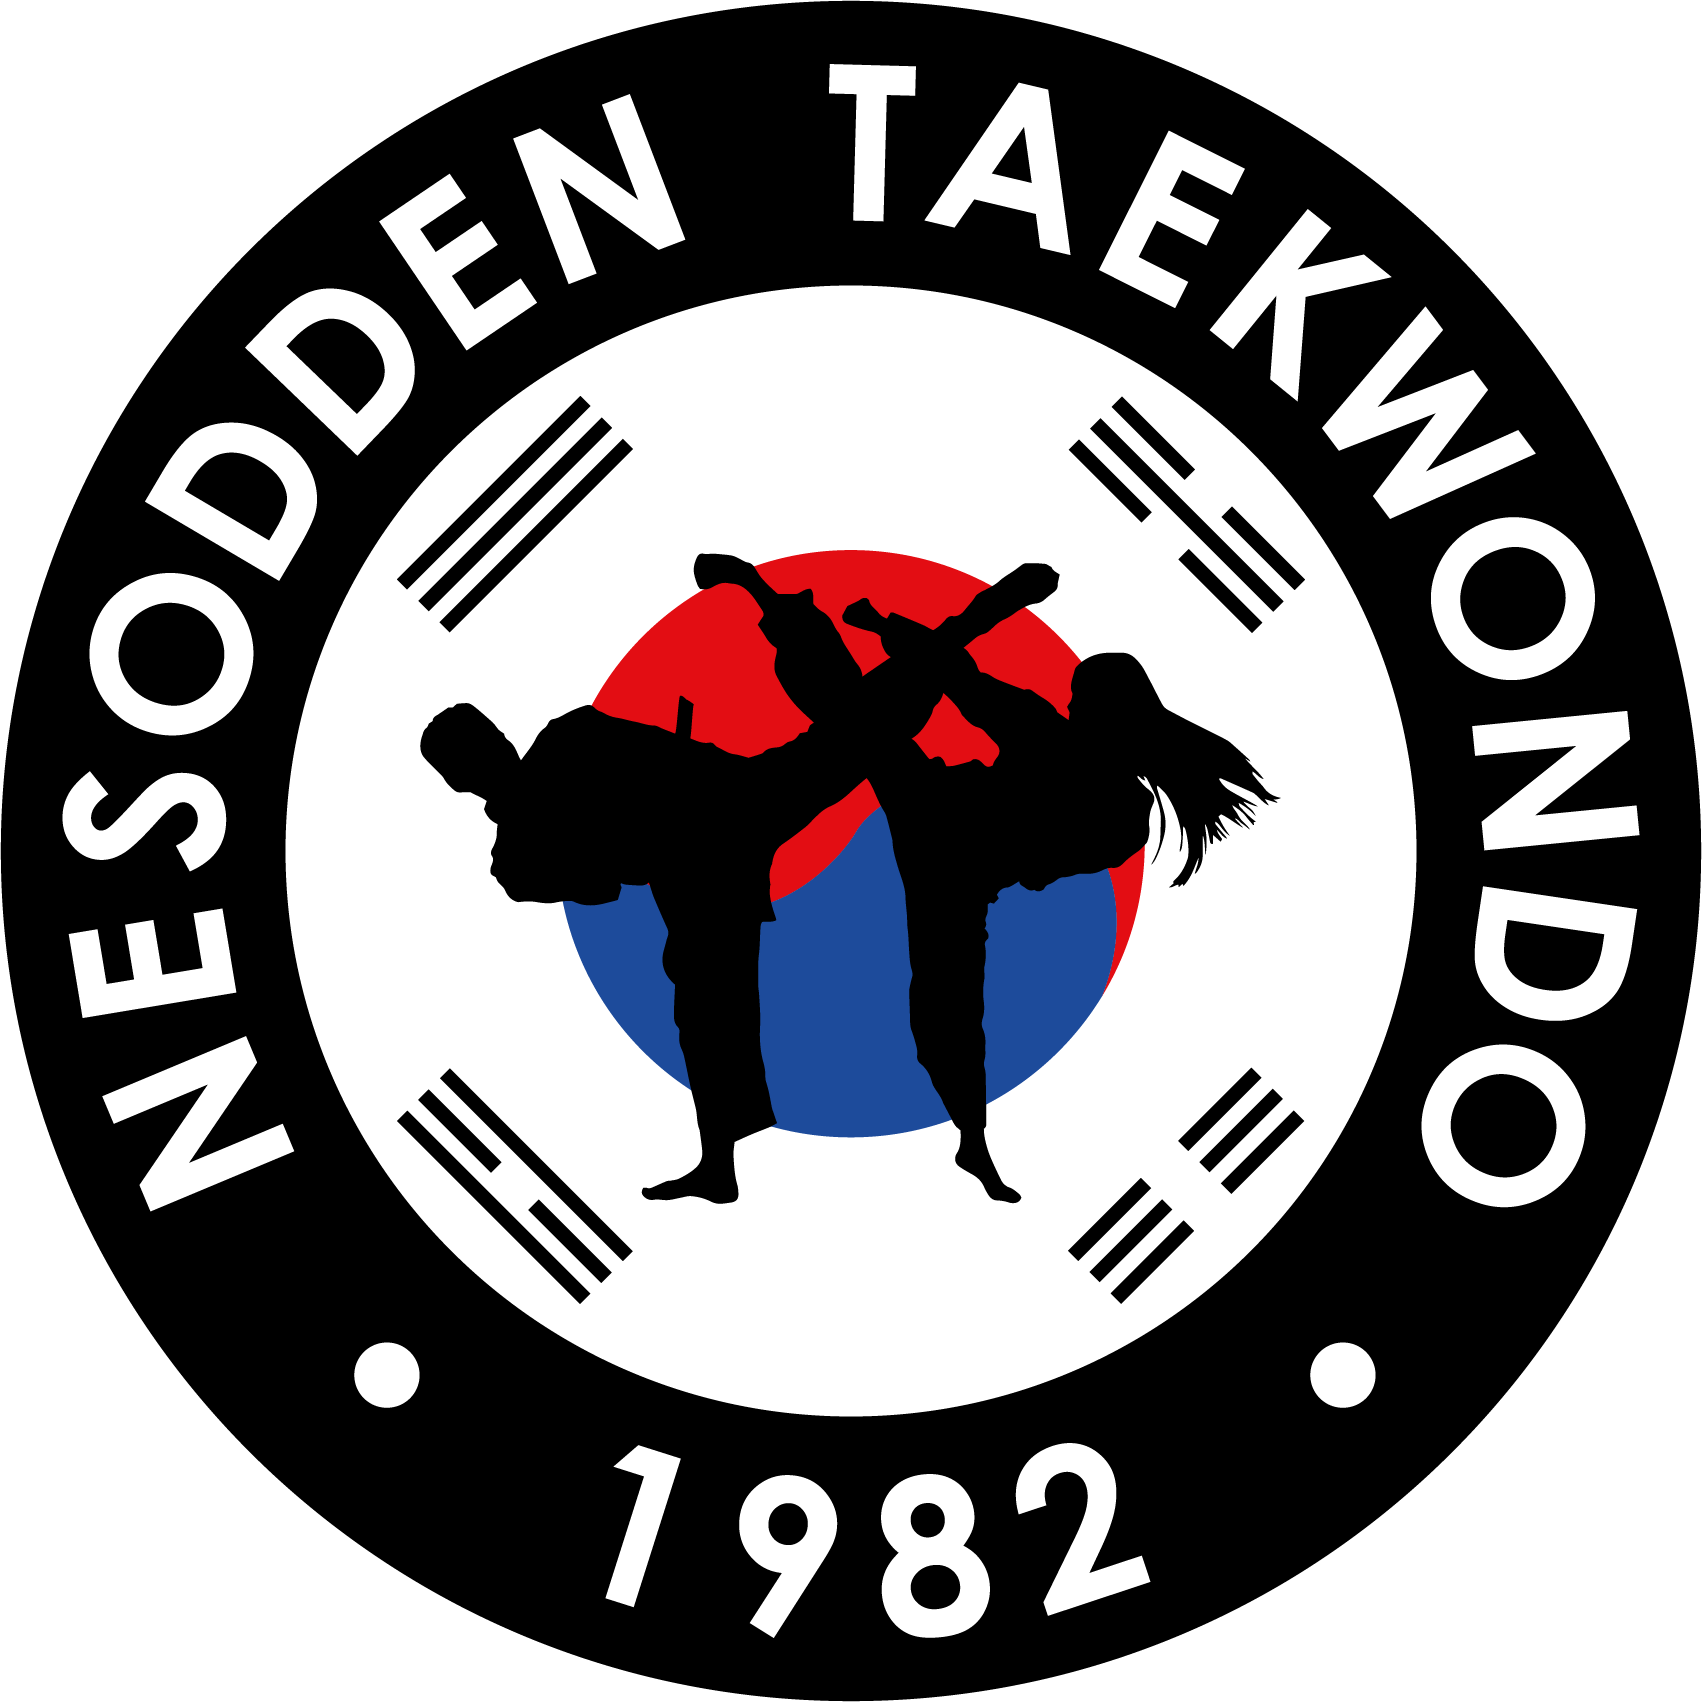 Nesodden Taekwondo Klubb